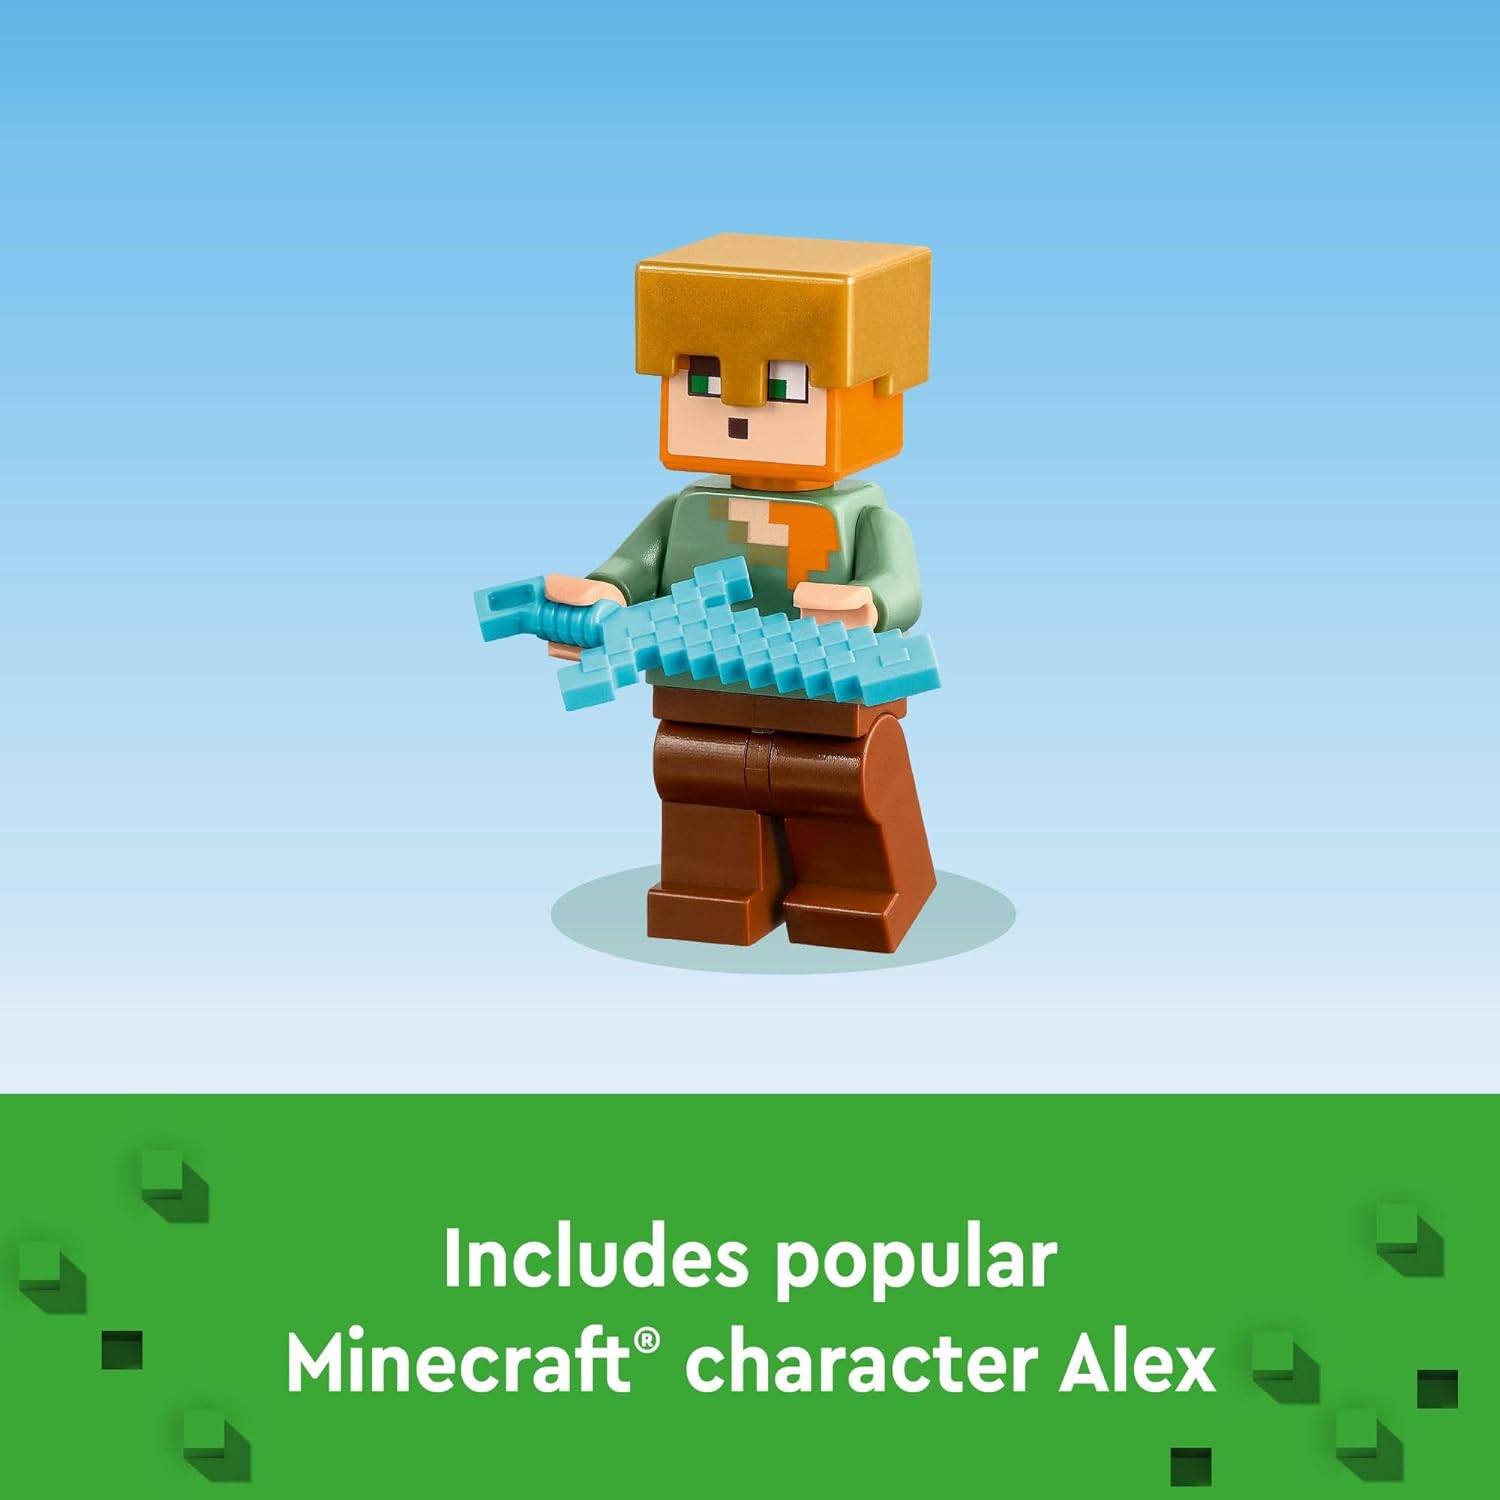 مجموعة بناء ماينكرافت ذا أرموري من ليجو 21252، تتضمن شخصيات ماينكرافت الشهيرة أليكس وأرمورسميث، لعبة حركة للاعبين والأطفال